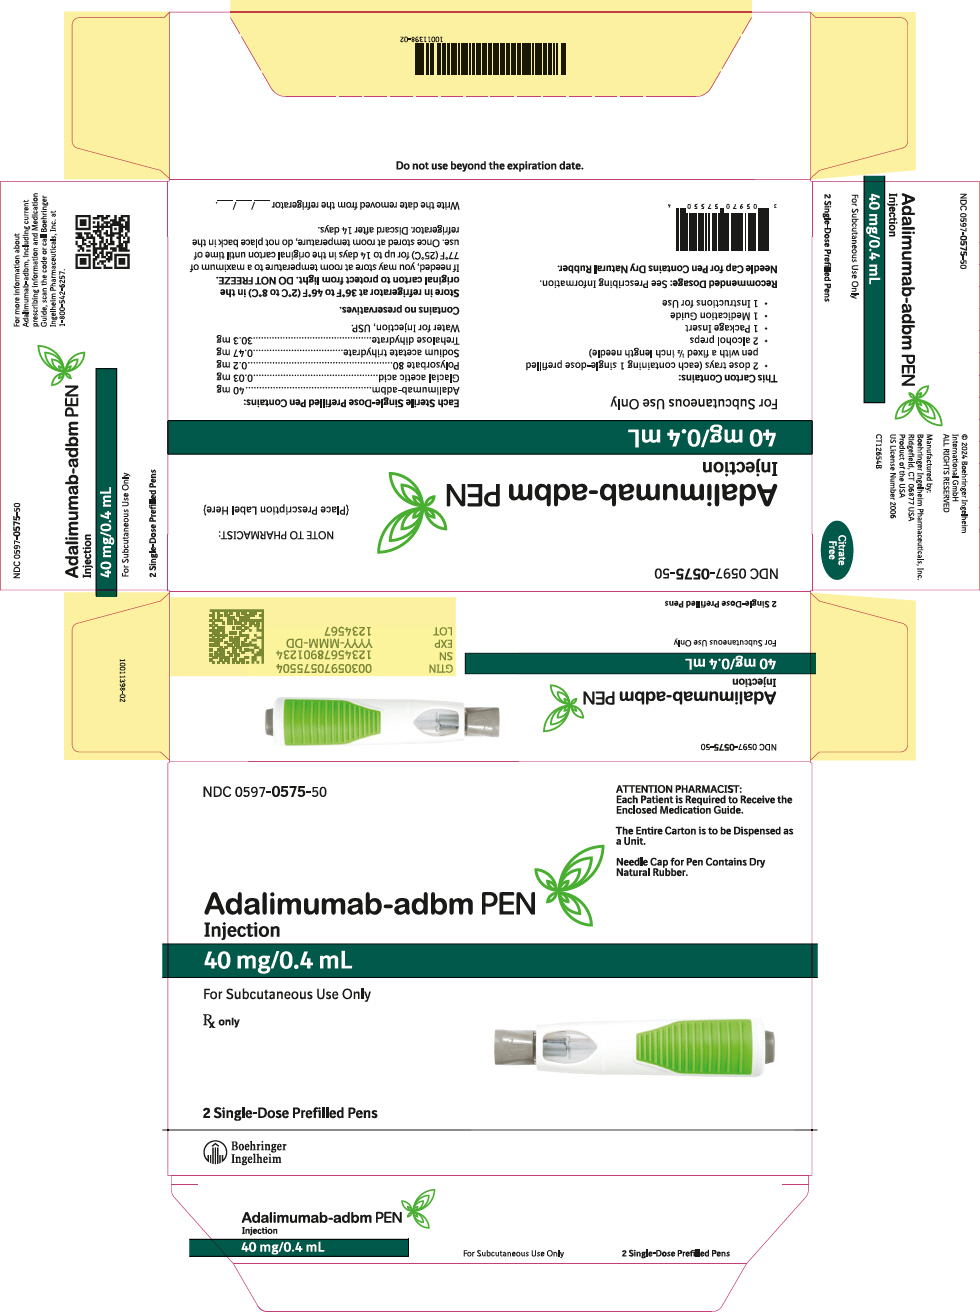 PRINCIPAL DISPLAY PANEL - 40 mg/0.4 mL Kit Carton - NDC 0597-0575-50